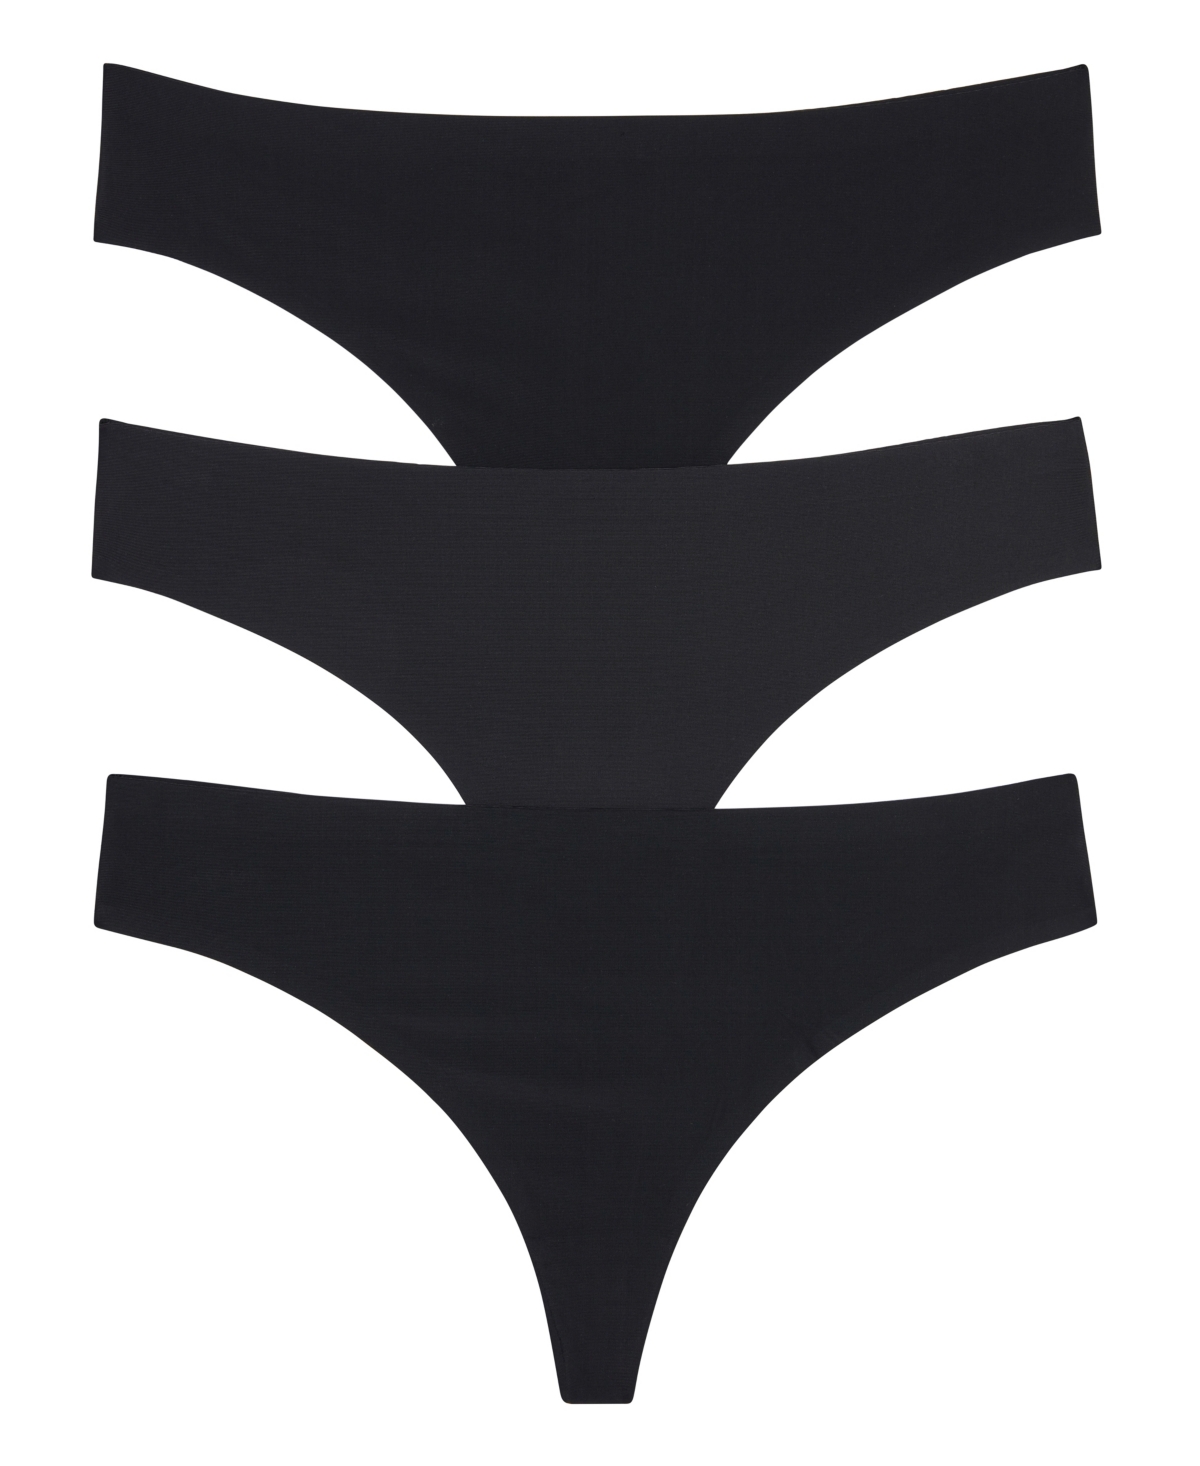 Women's Skinz Thong Underwear Set, 3 Pieces - Black, Black, Black